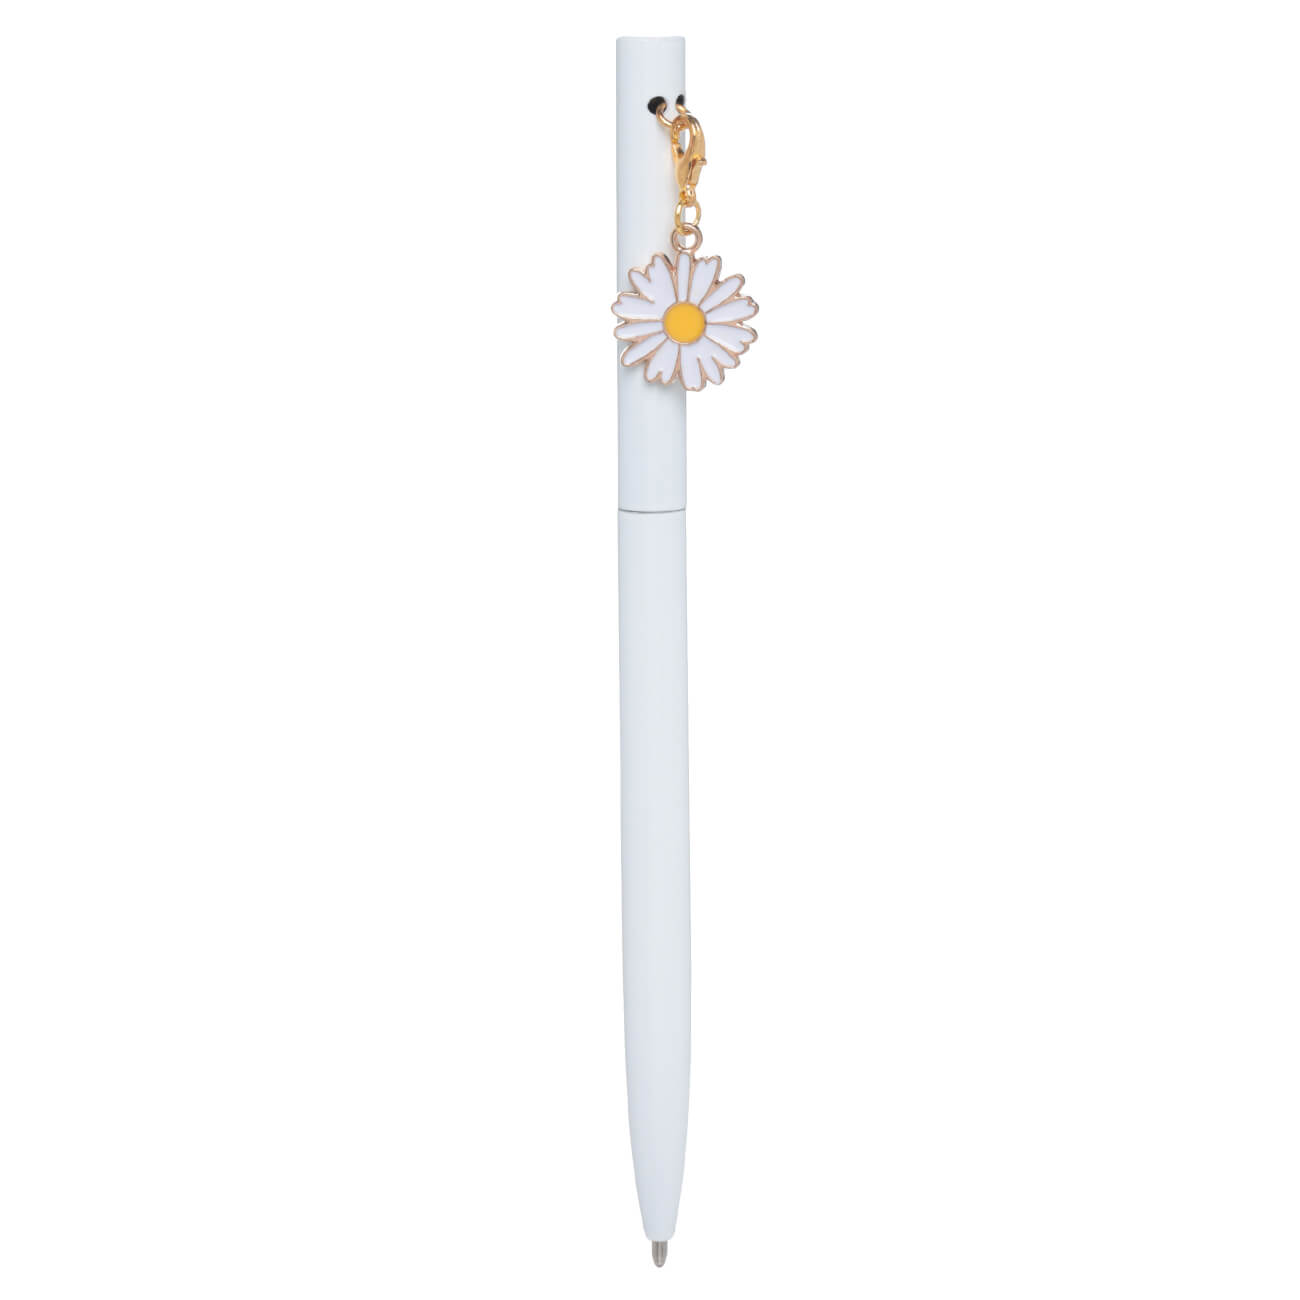 Ручка шариковая, 13 см, с подвеской, сталь, белая, Ромашка, Stationery gold ручка подарочная шариковая в кожзам футляре